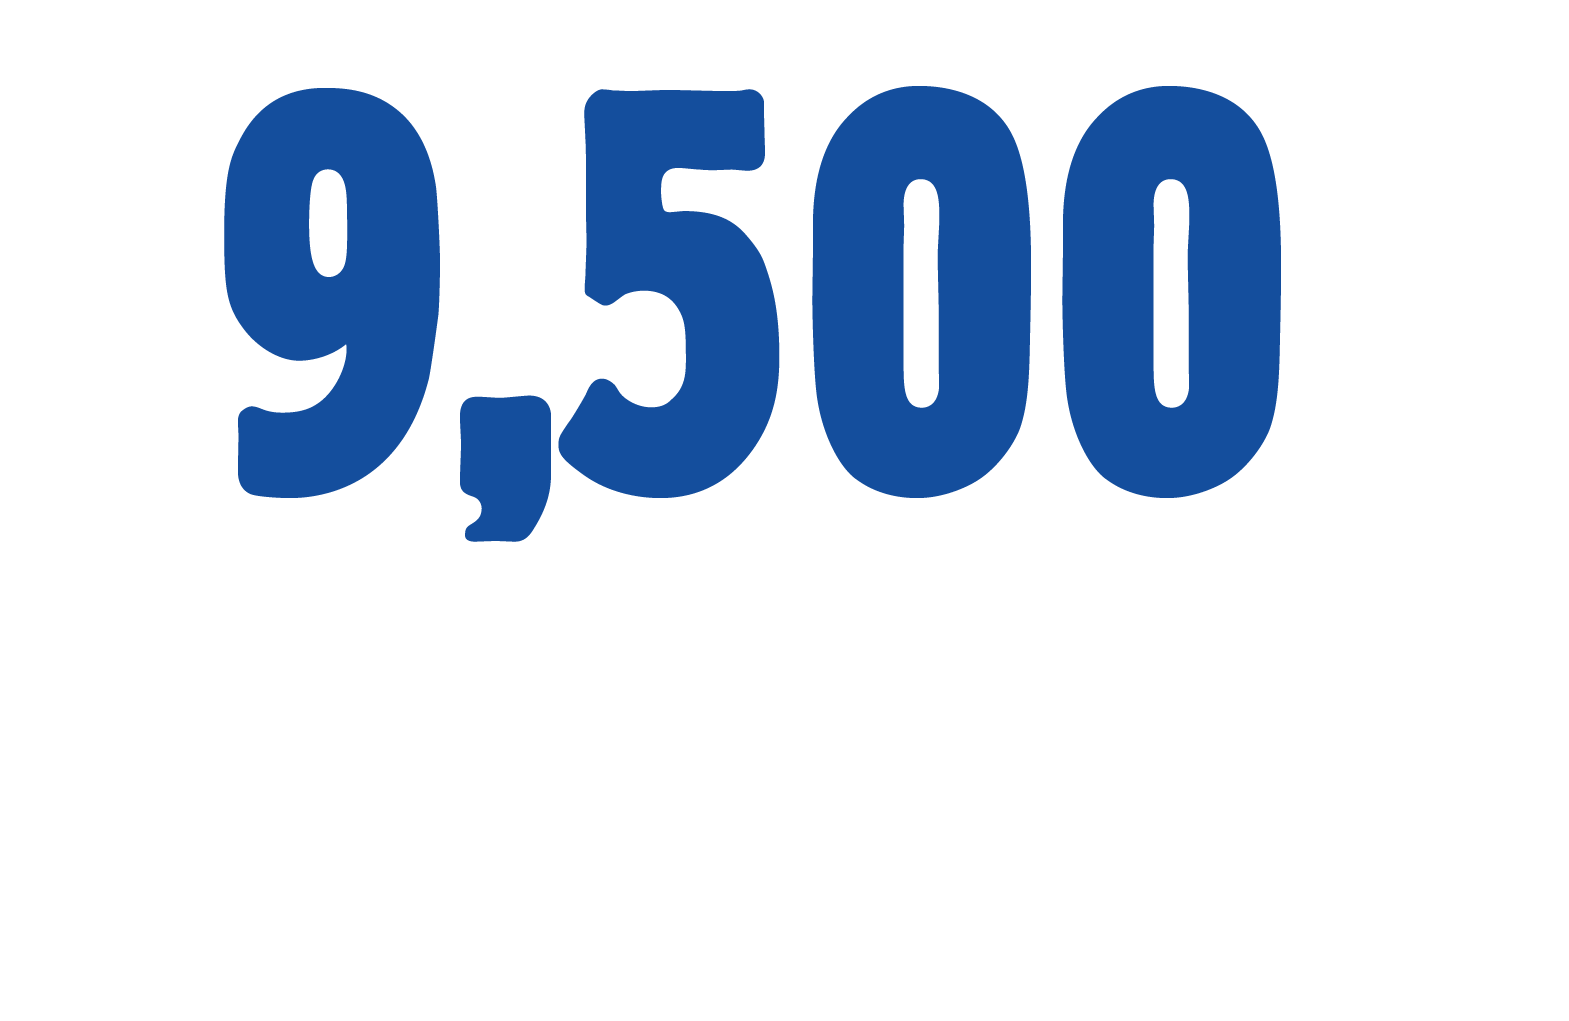 9,500 pumps